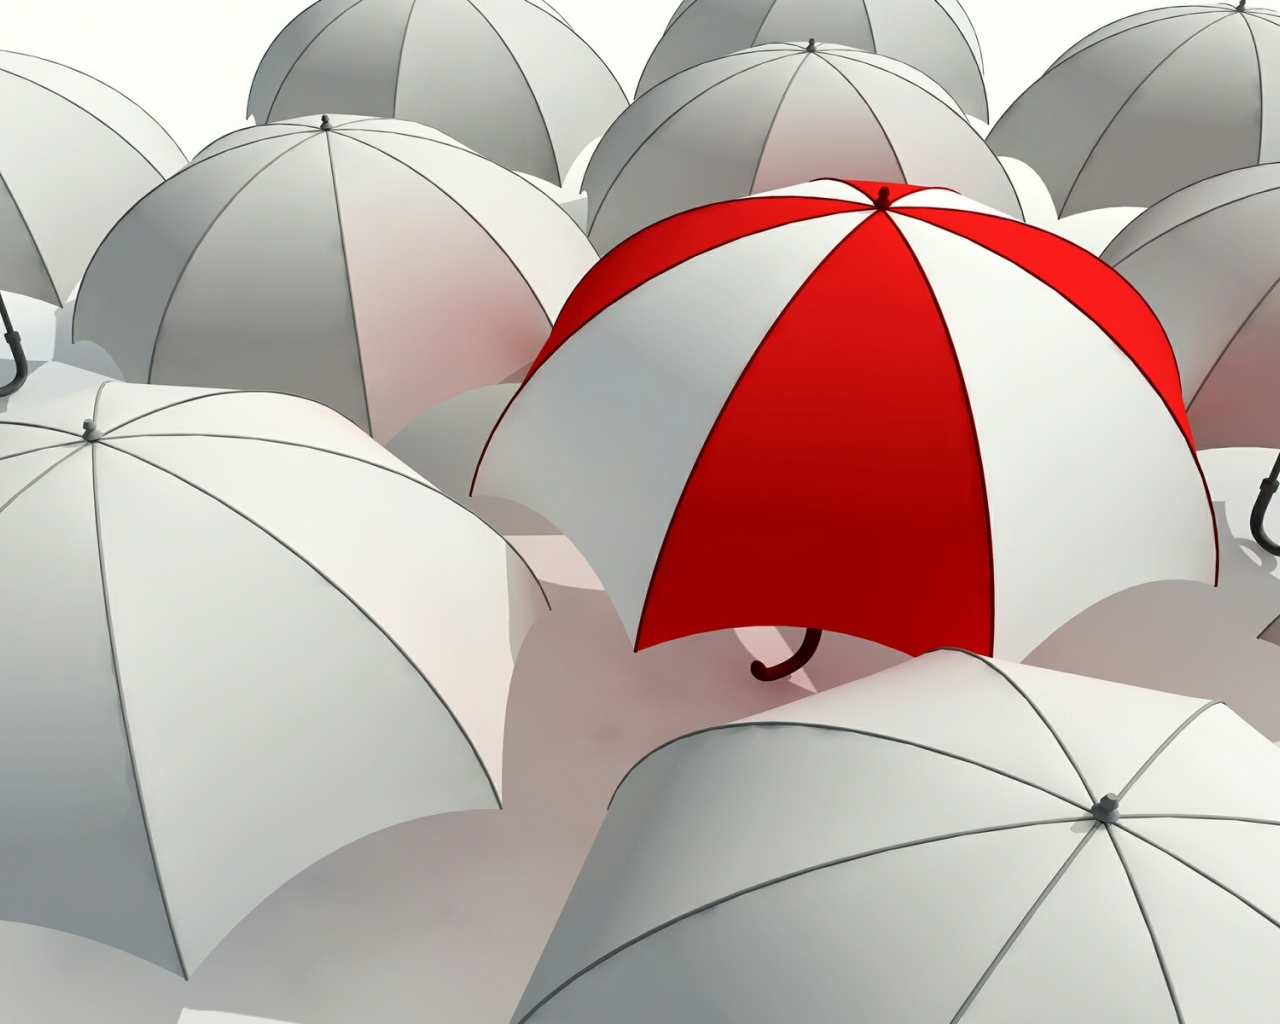 Зонт, белый, зонтик, серость, umbrella, красный, отличие